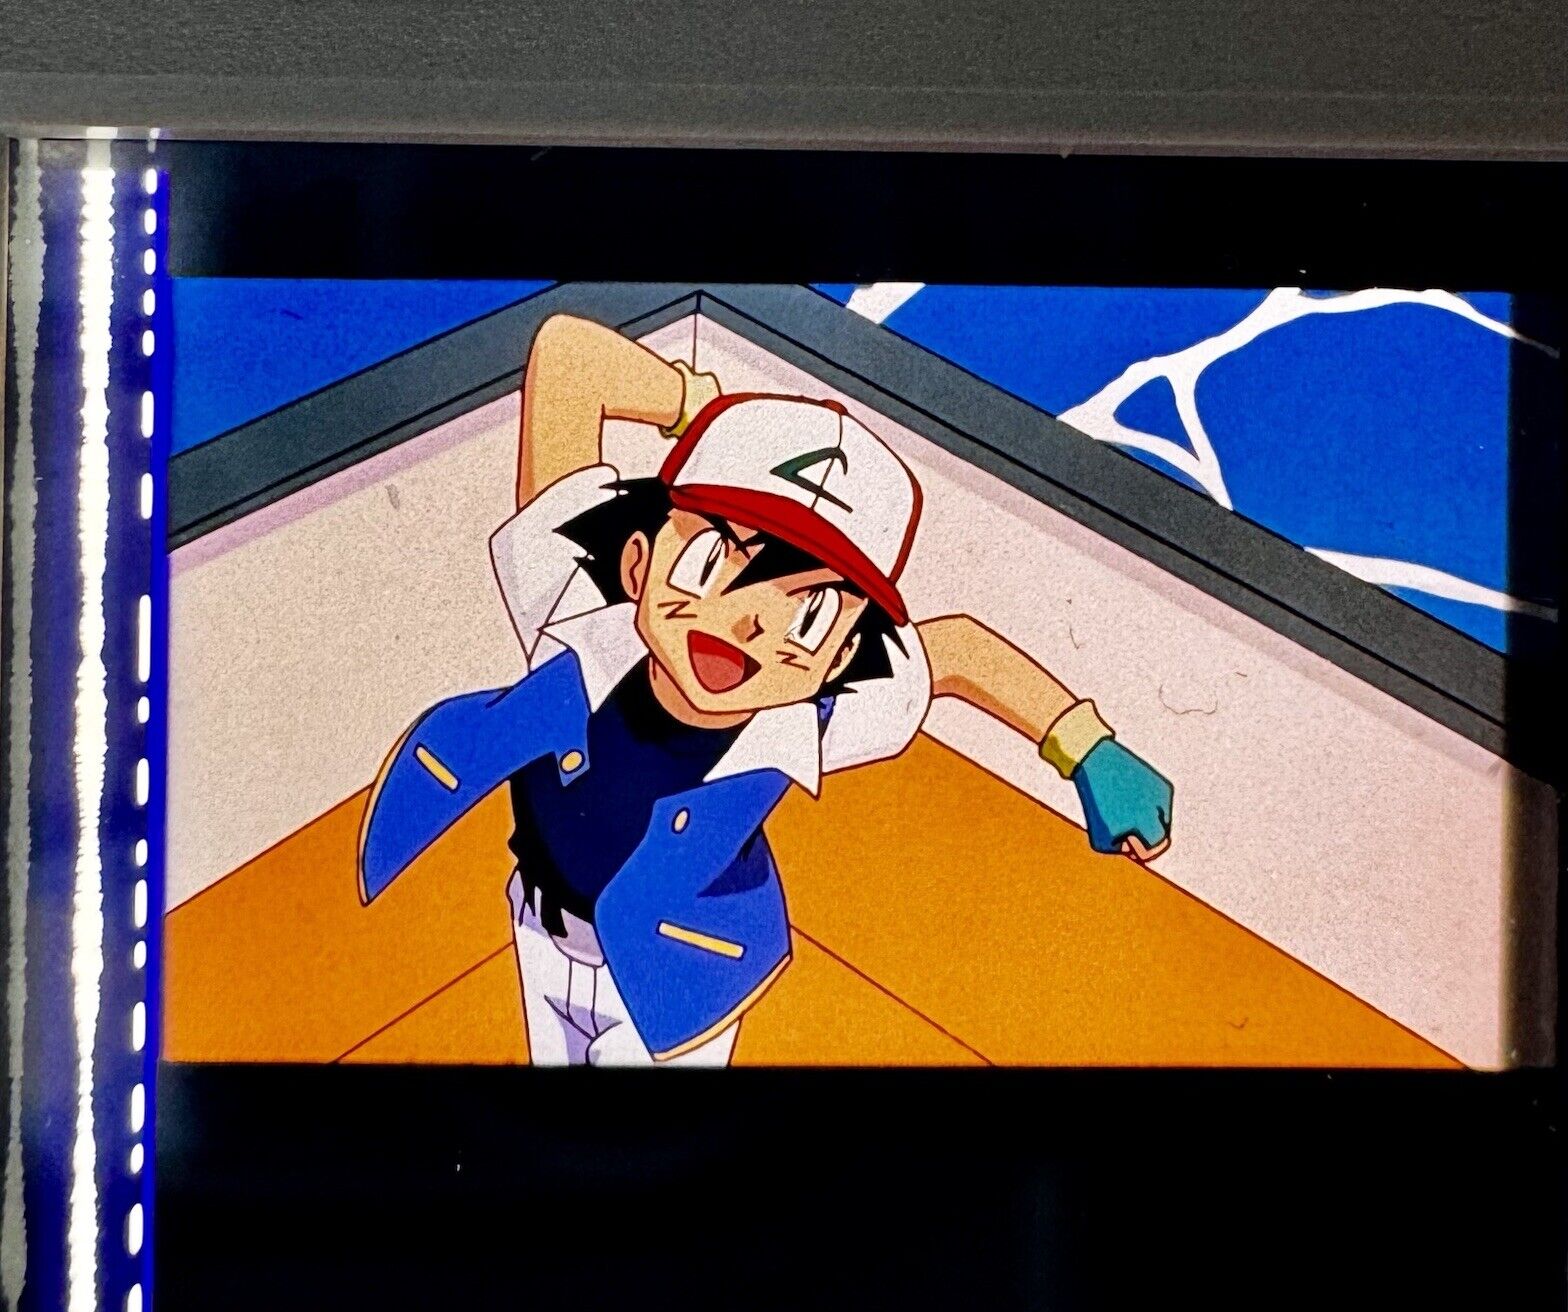 Pokémon The Movie 2000 Ash Ketchum 35mm Film Slide Frames Rare Satoshi